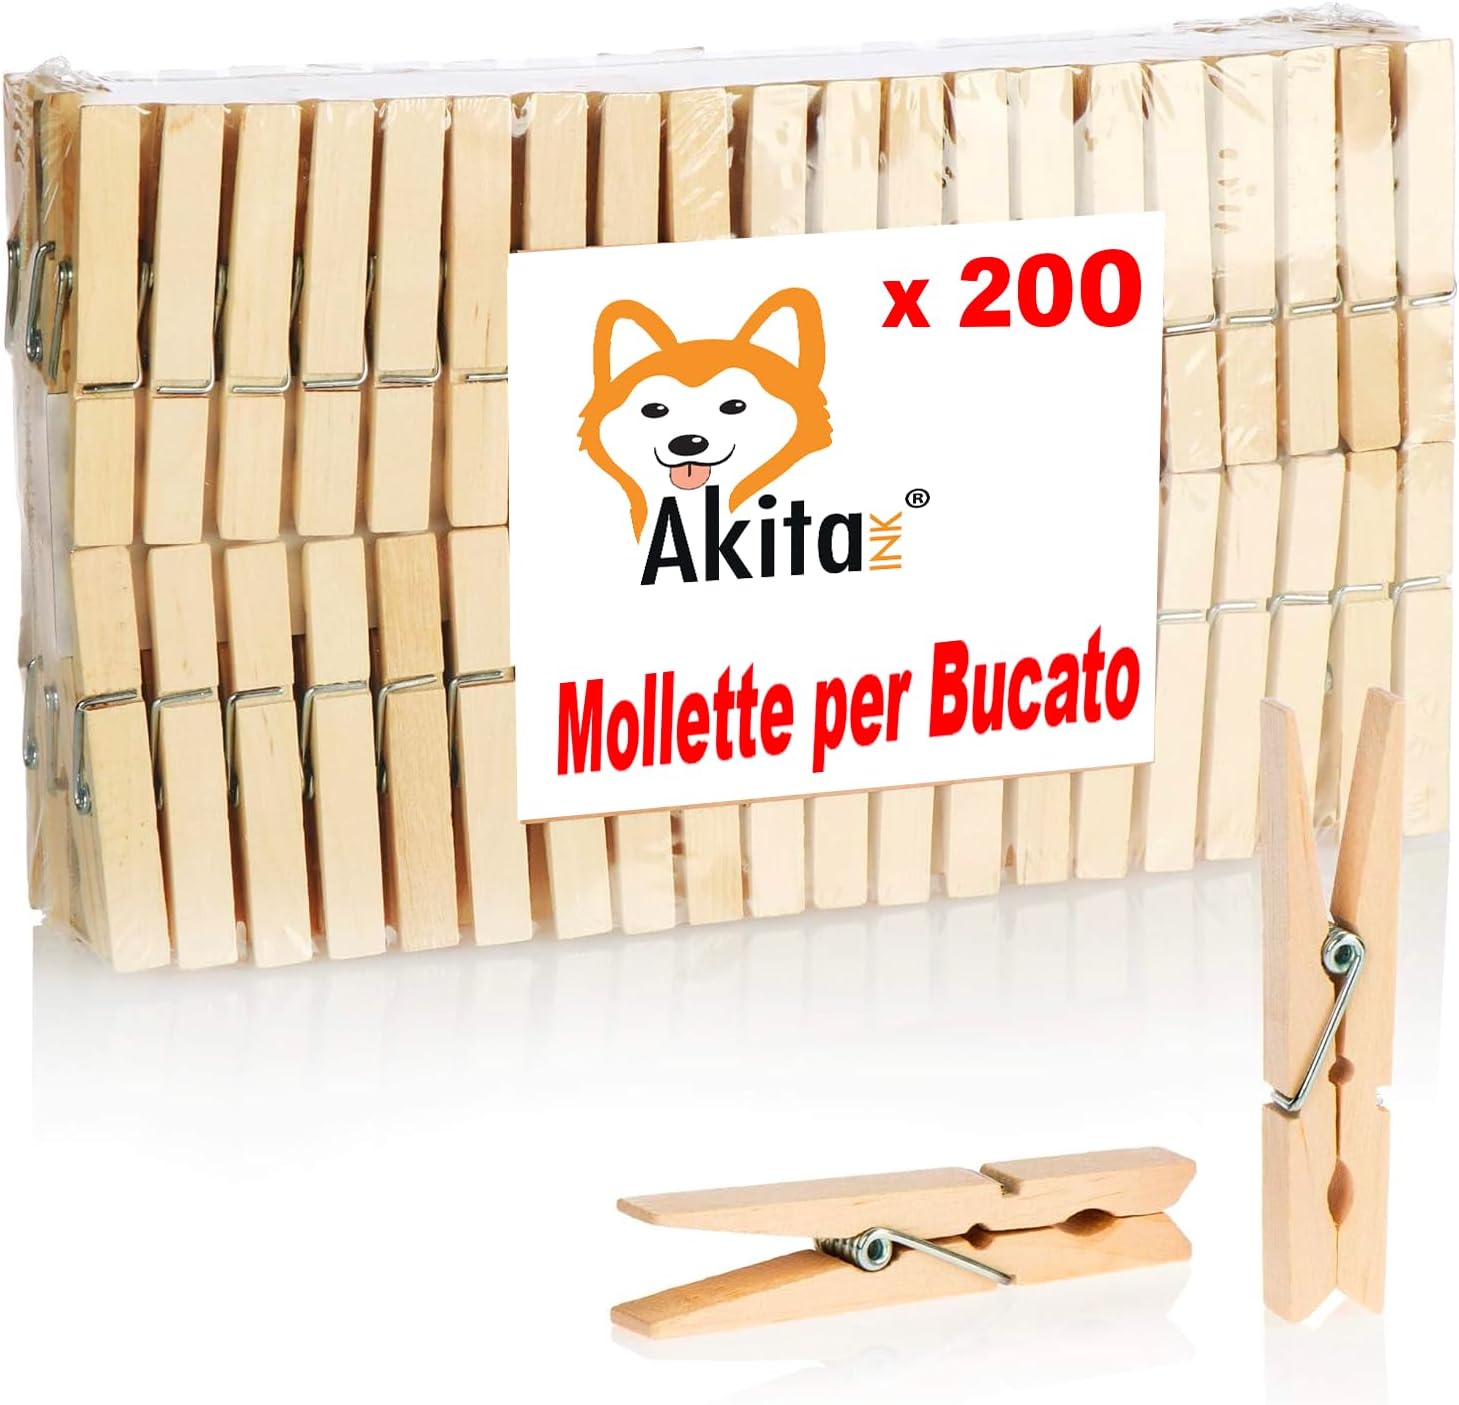 Akitaink - mollette per bucato 200 pezzi, mollette in legno, lunghezza 10 cm